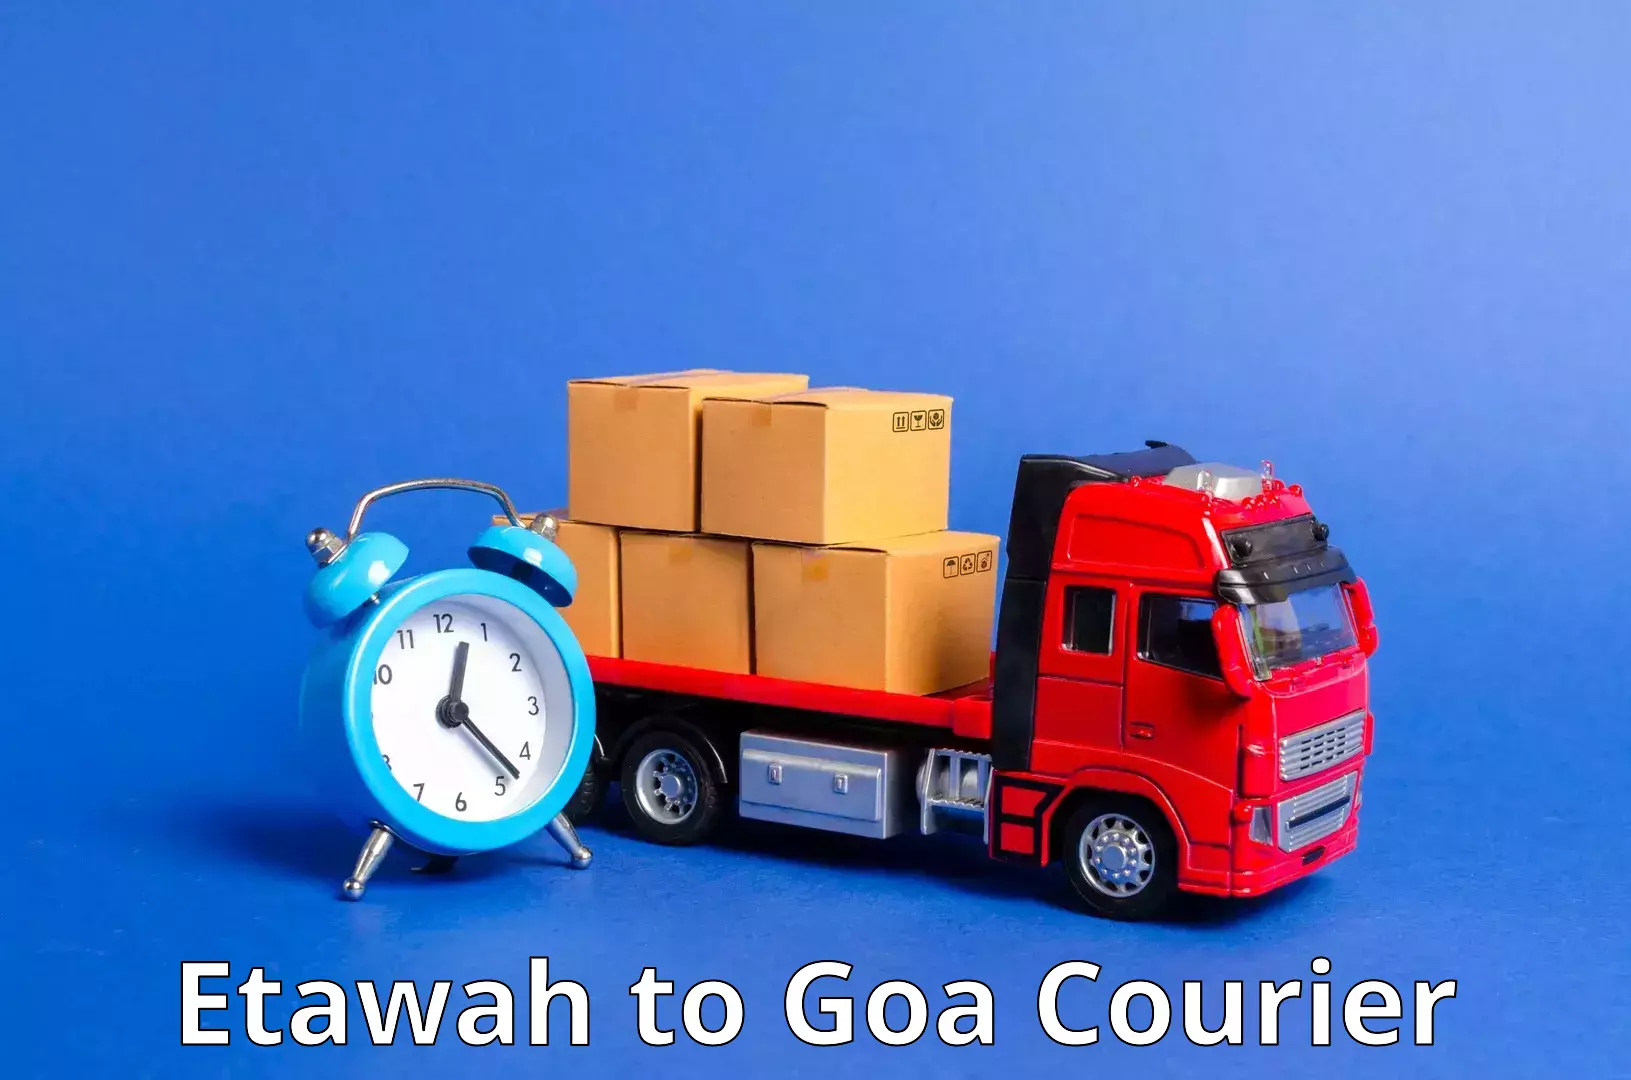 Comprehensive freight services Etawah to Panaji